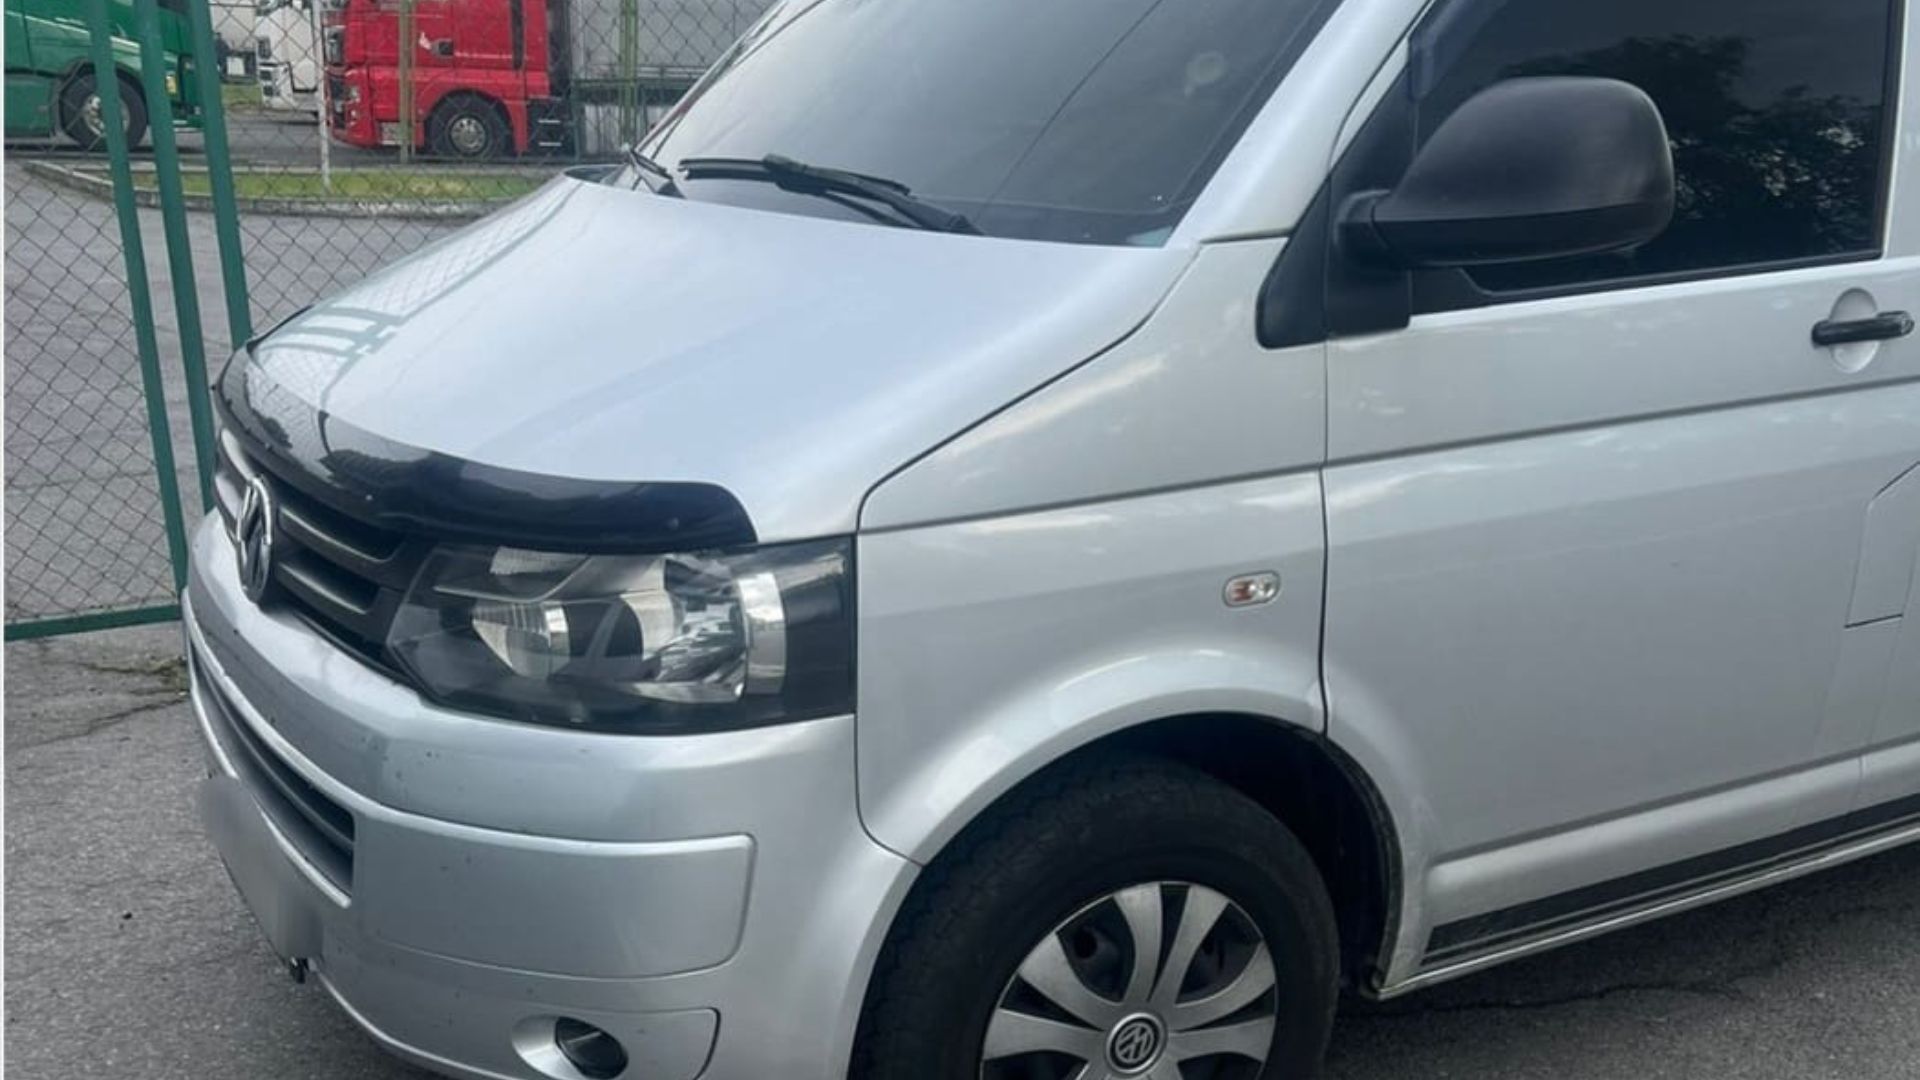 Пограничники Чопского отряда обнаружили угнанный автомобиль на границе с Венгрией. Это произошло на КПП «Тиса», где был обнаружен автомобиль Volkswagen, который Интерпол разыскивал как угнанный.